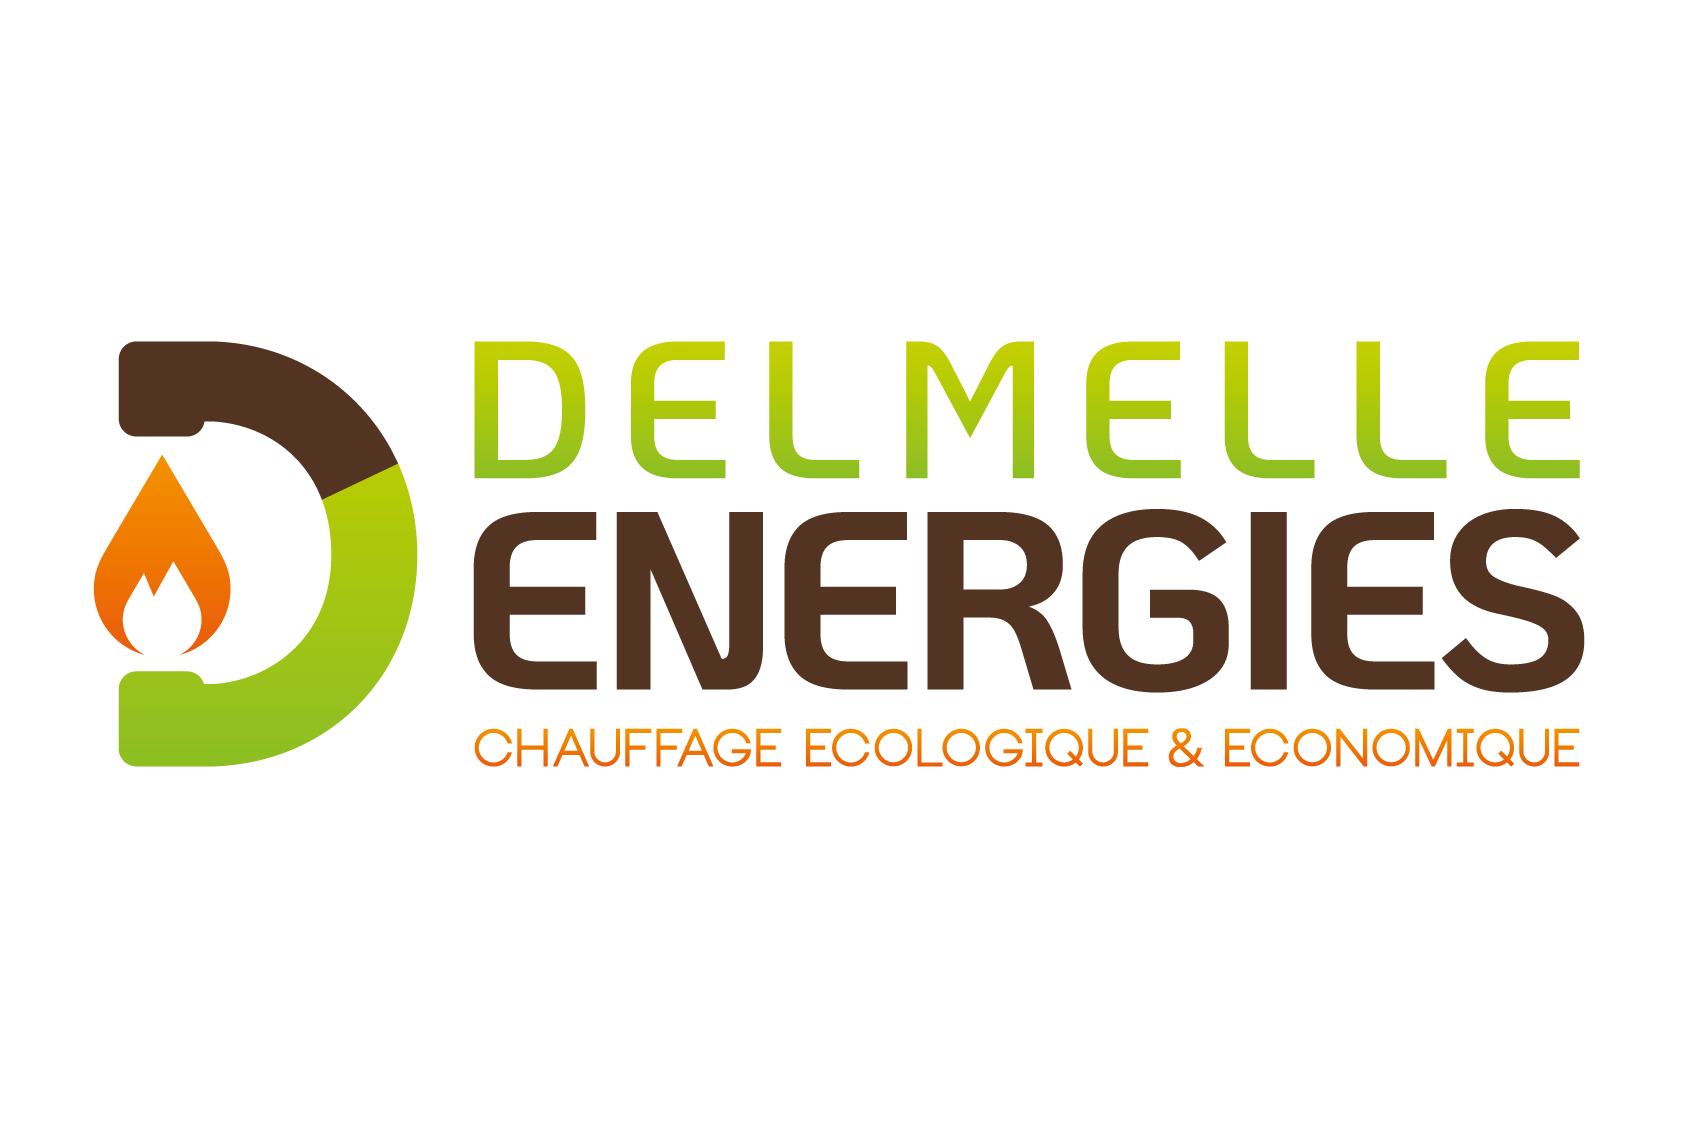 Delmelle Energies votre spécialiste pour les chaudières pellets en province de Liège